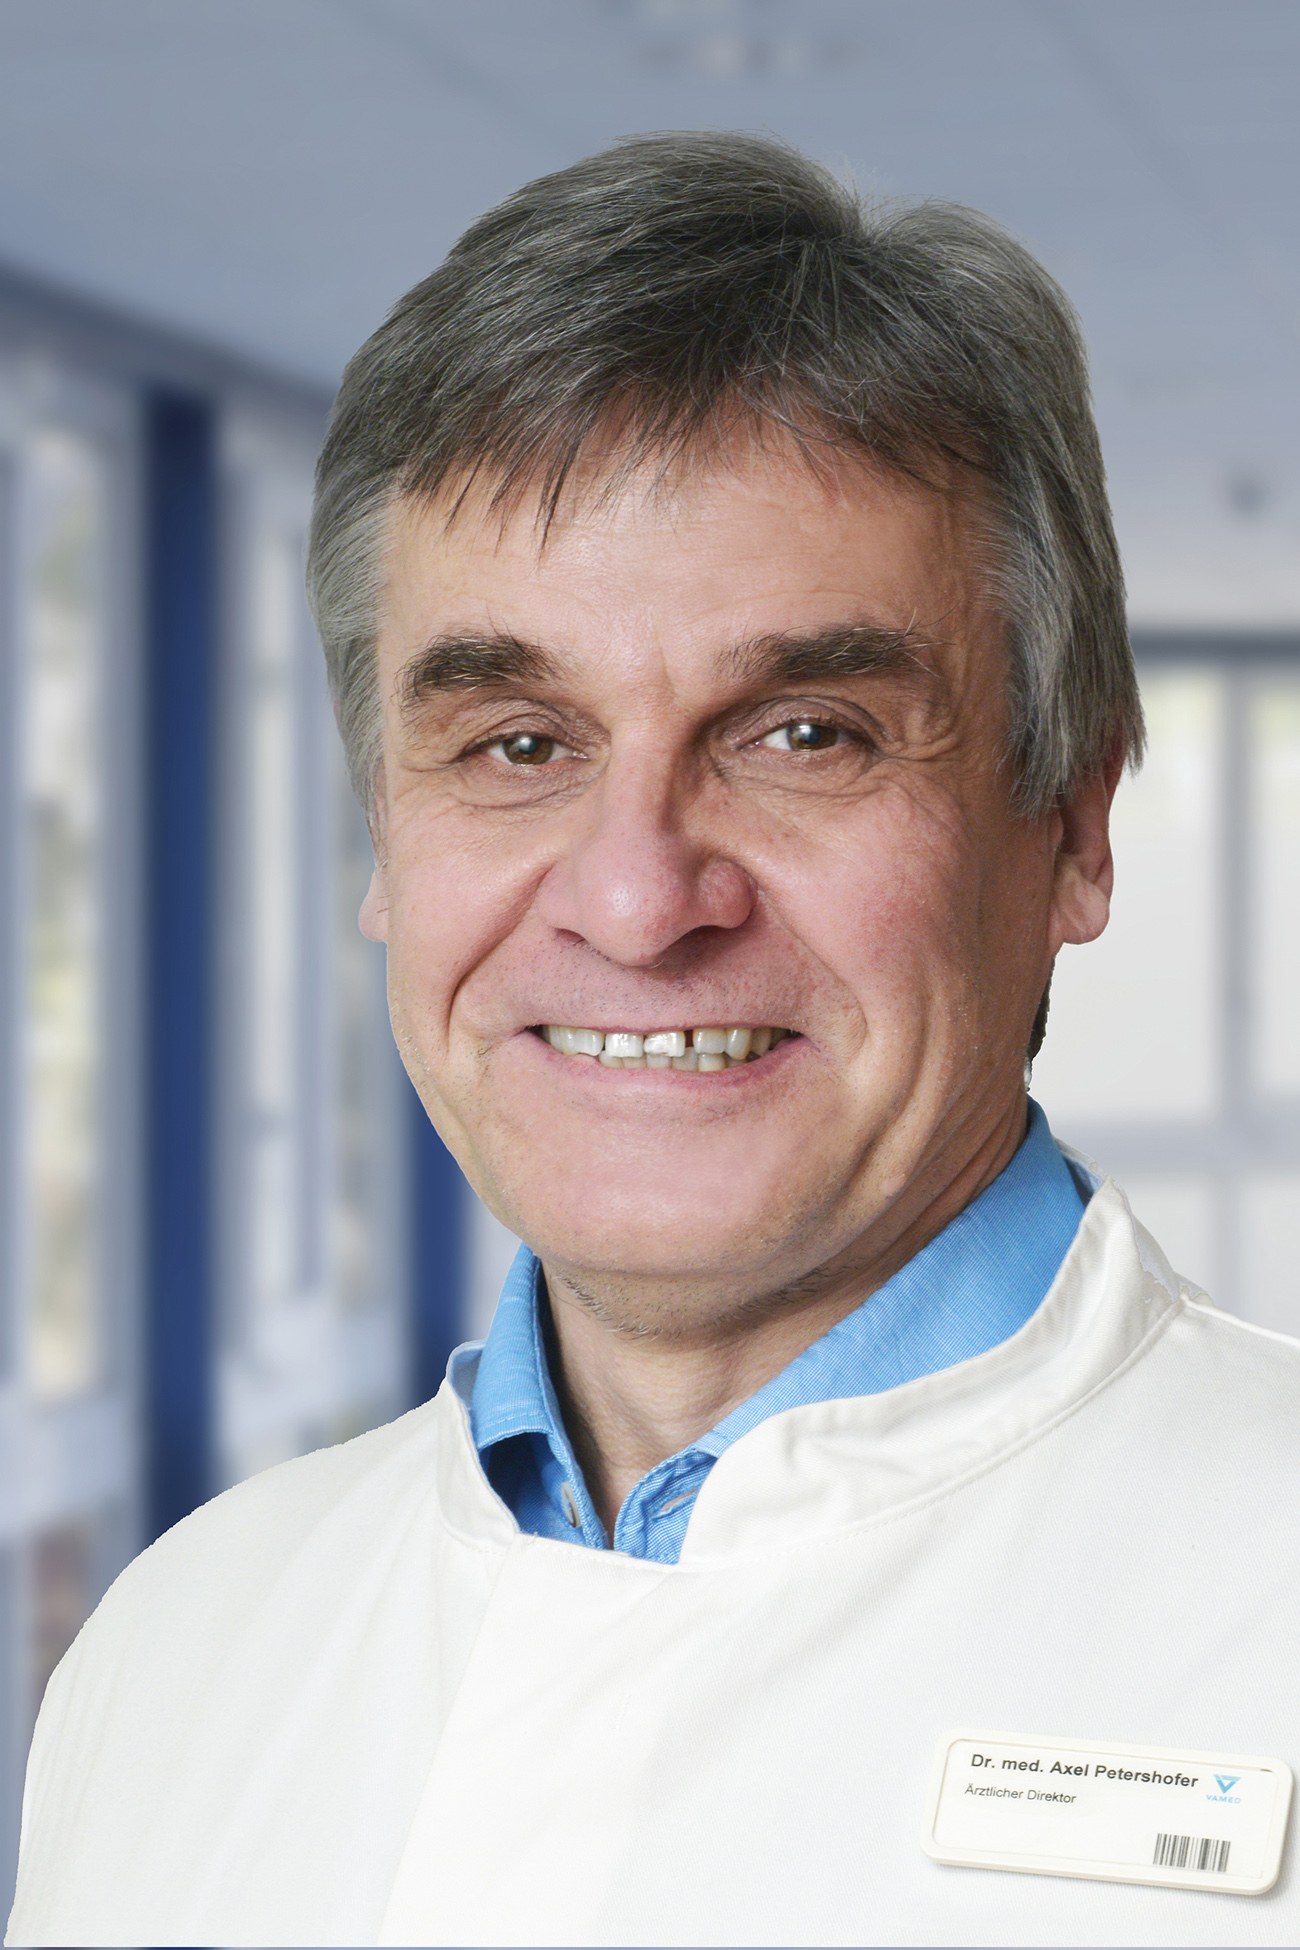 Dr. Axel Peterhofer